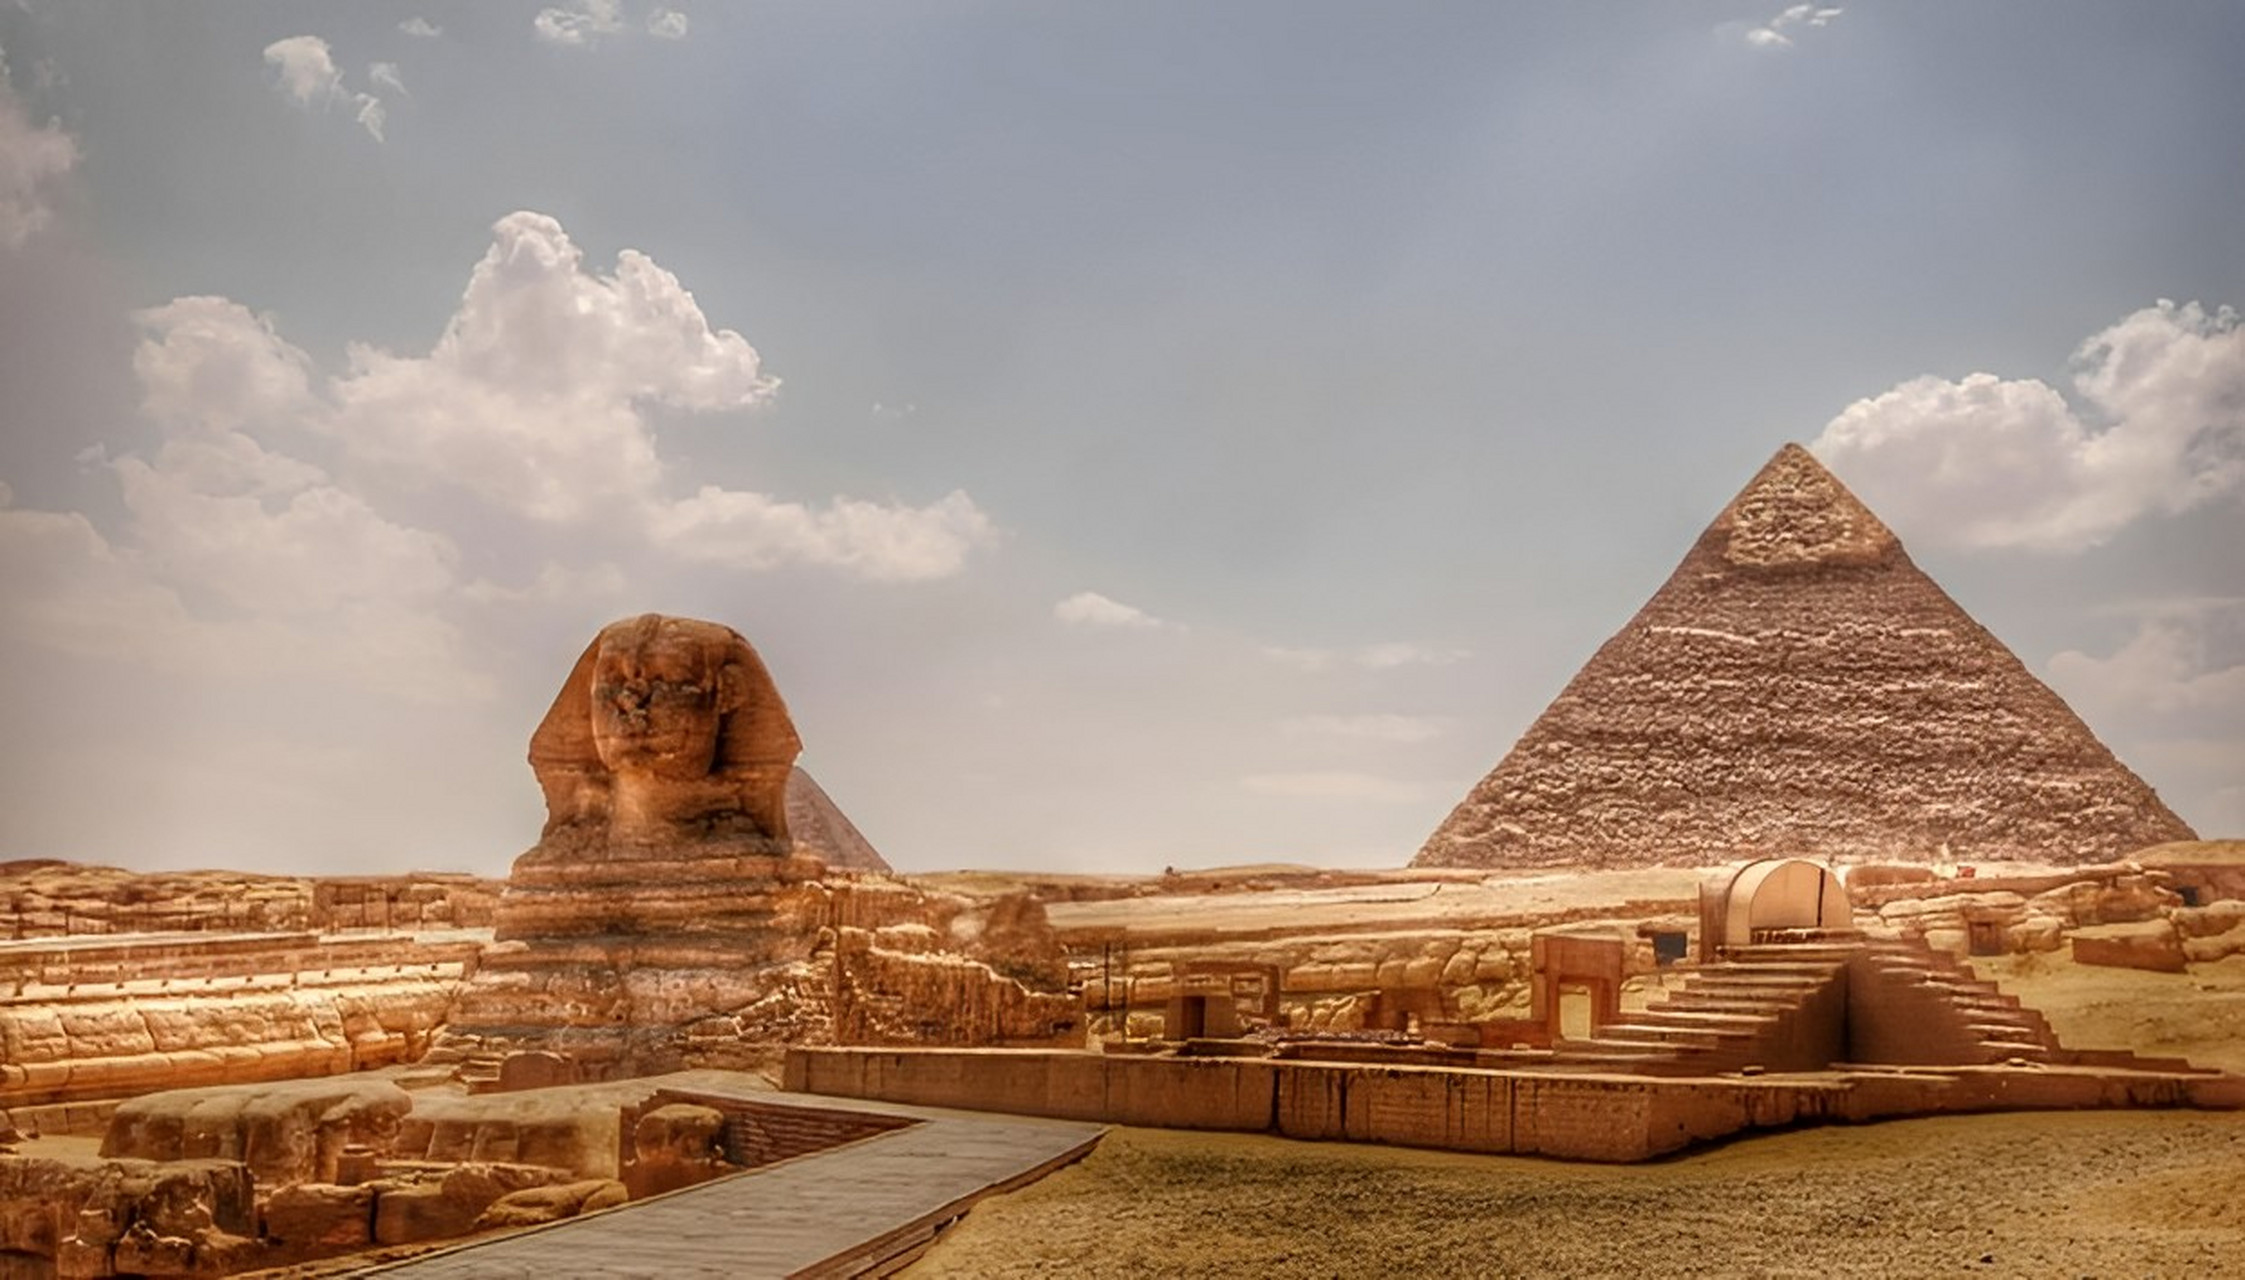 胡夫金字塔   胡夫金字塔是埃及金字塔山之一,塔有146座